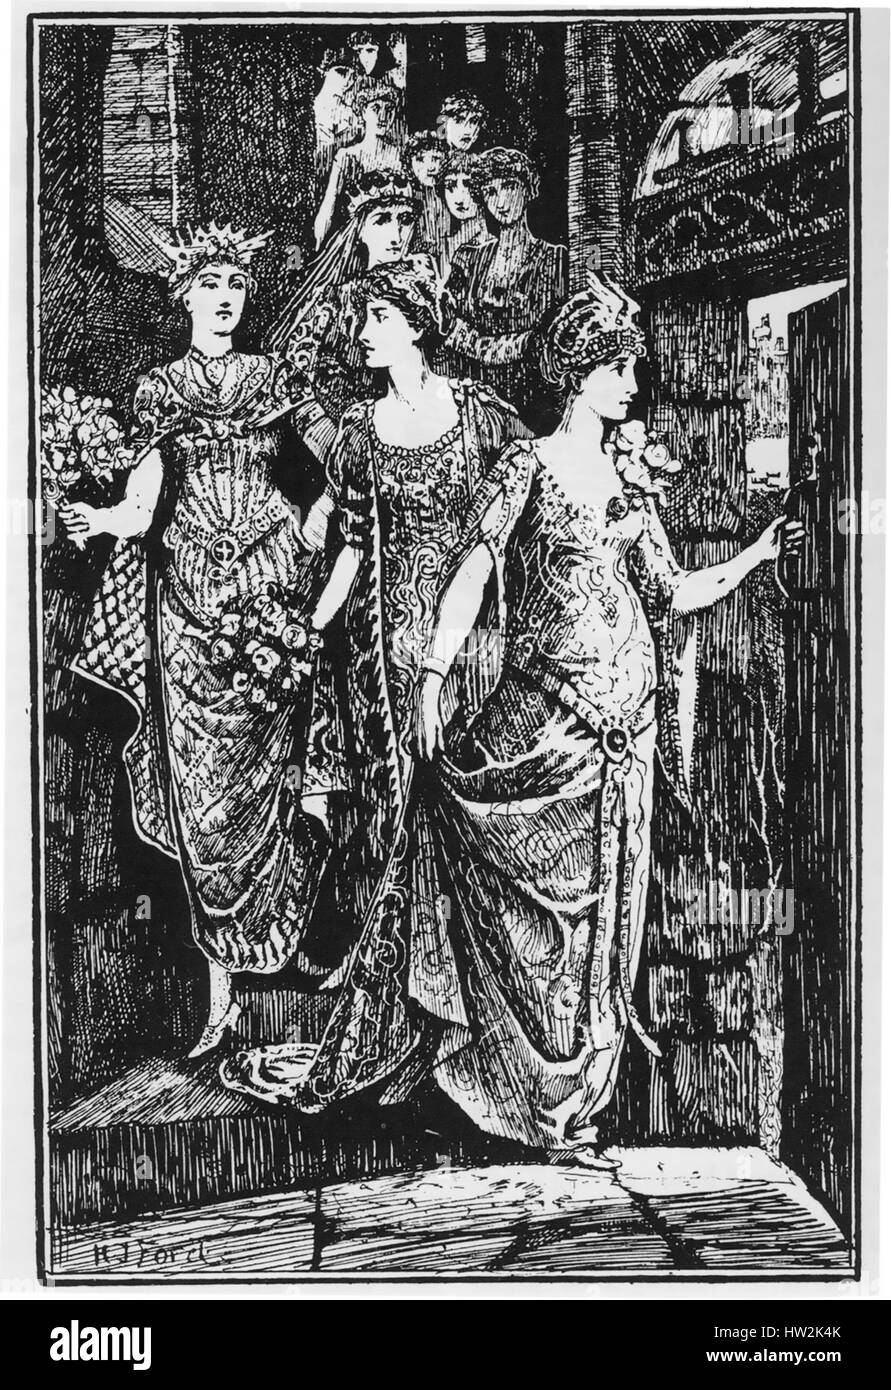 Les Douze Dancing Princesses. Conte recueilli par les frères Grimm. Illustration par H.J.Ford à partir d'un livre de 1890 leur montrant en descendant l'escalier secret. Banque D'Images